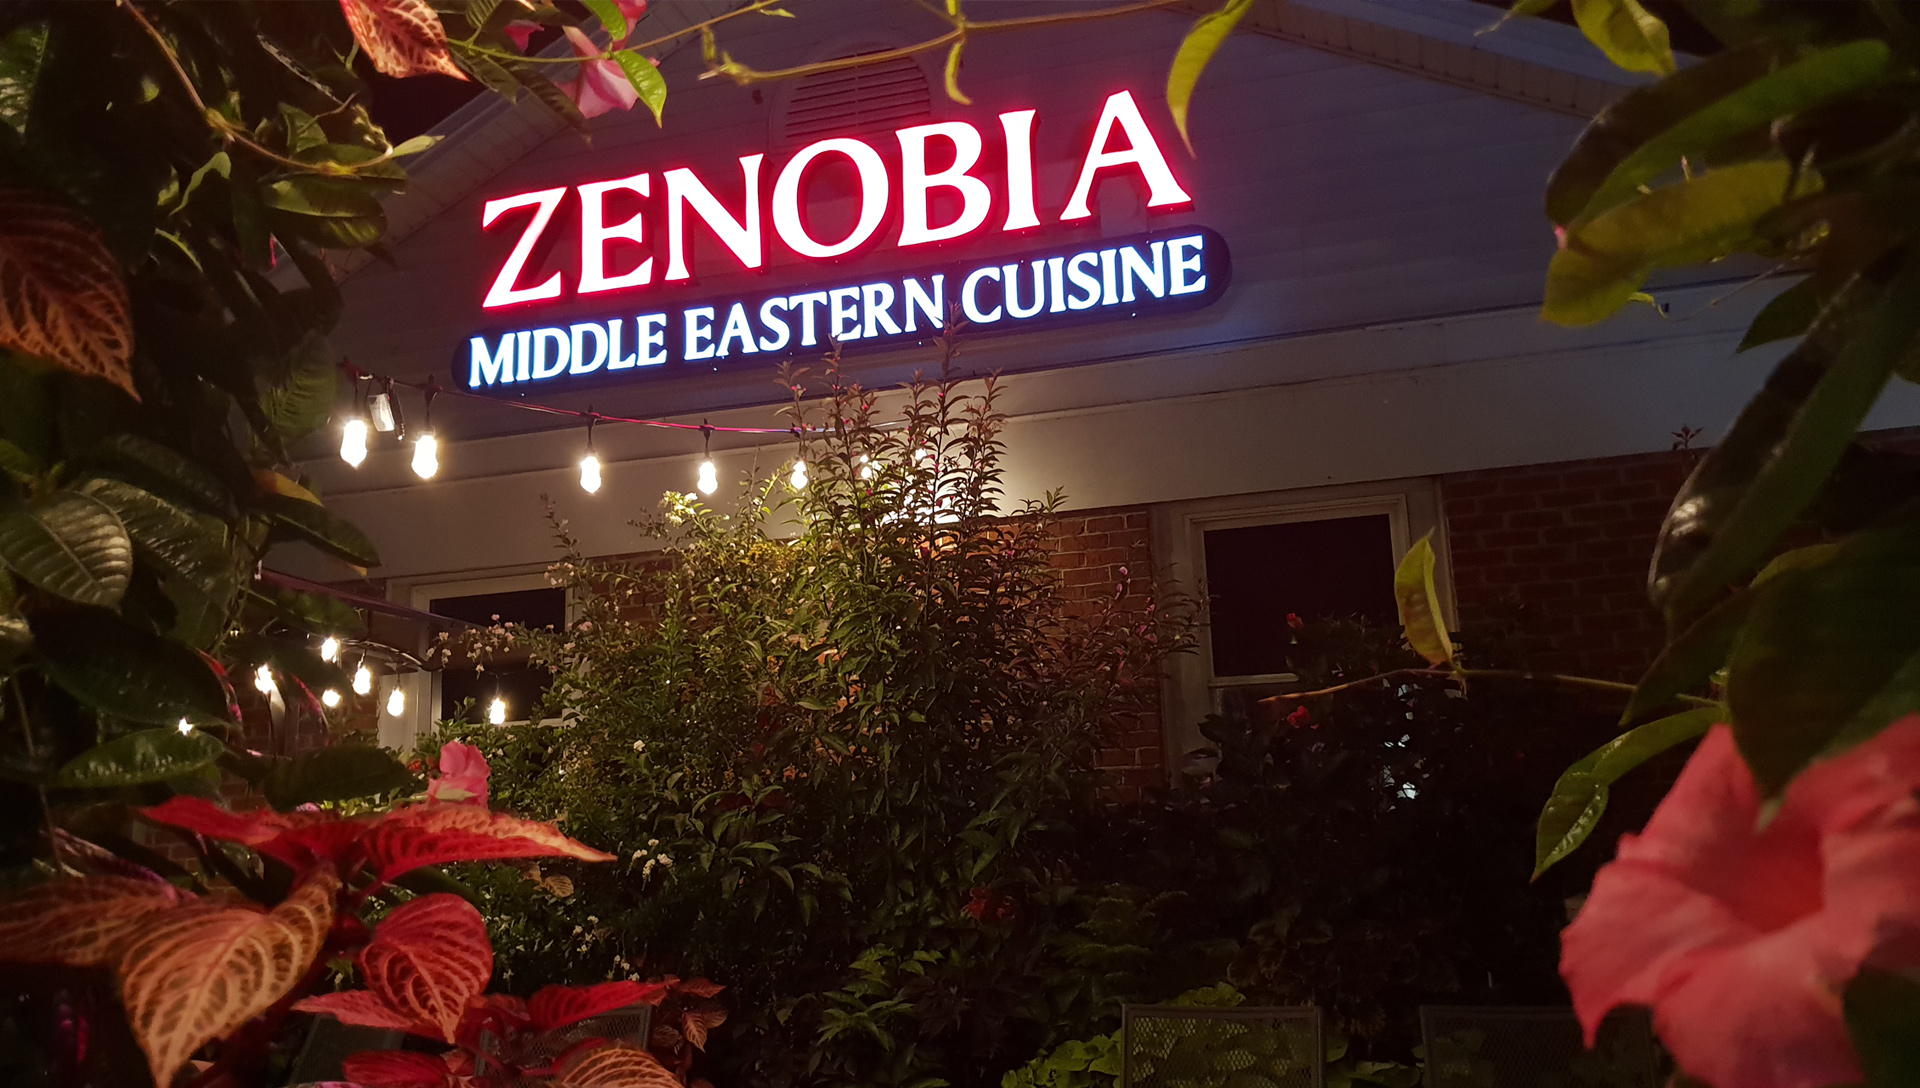 Zenobia LED Sign